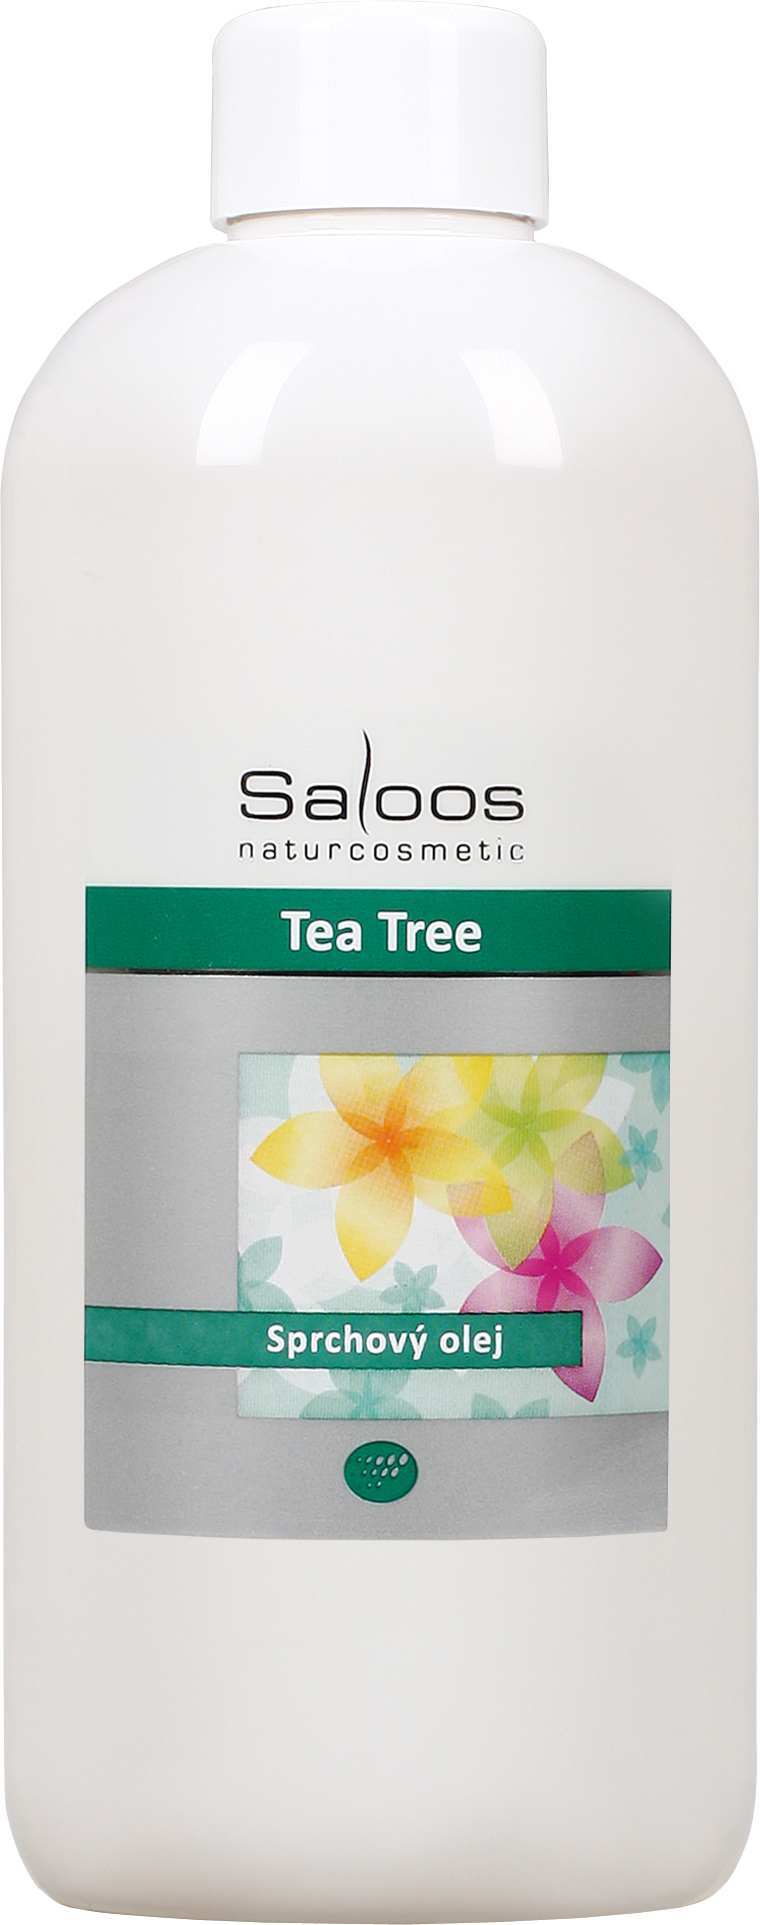 Saloos Tea tree - sprchový olej Balení: 500 ml